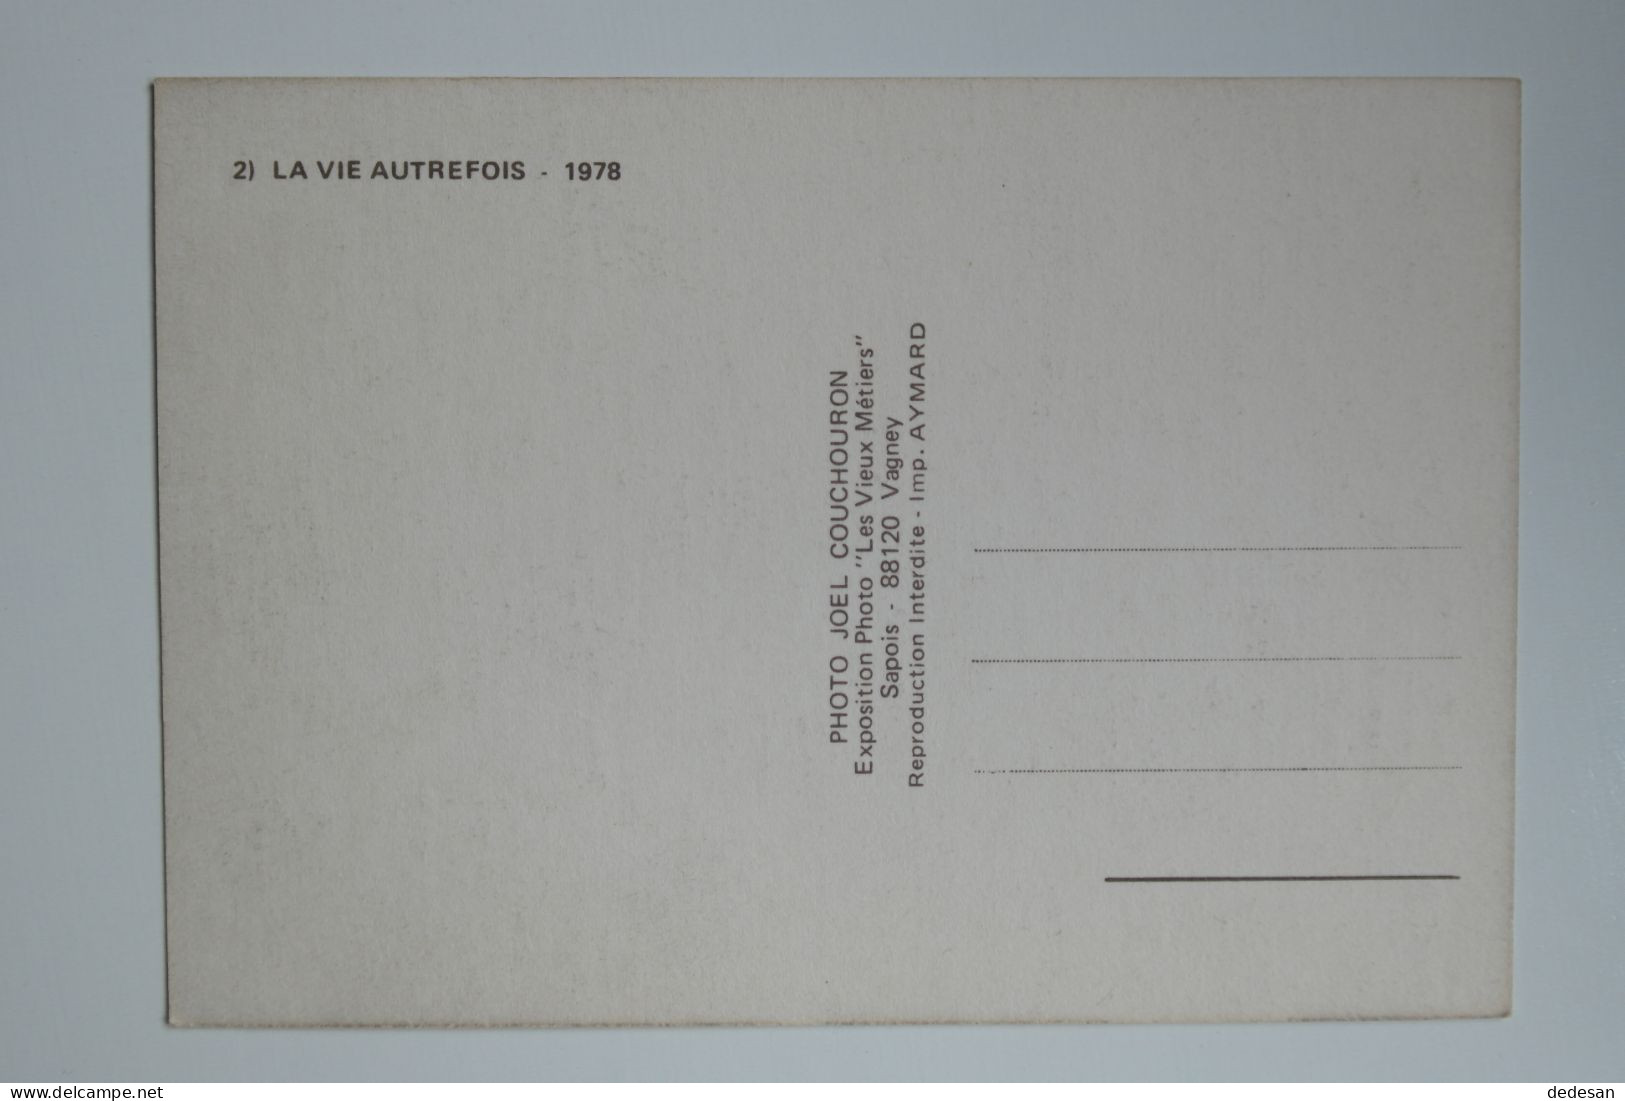 CPSM Grand Format 148x102 2) La Vie Autrefois 1978 Editions Les Vieux Métiers - CHA03 - Landbouwers